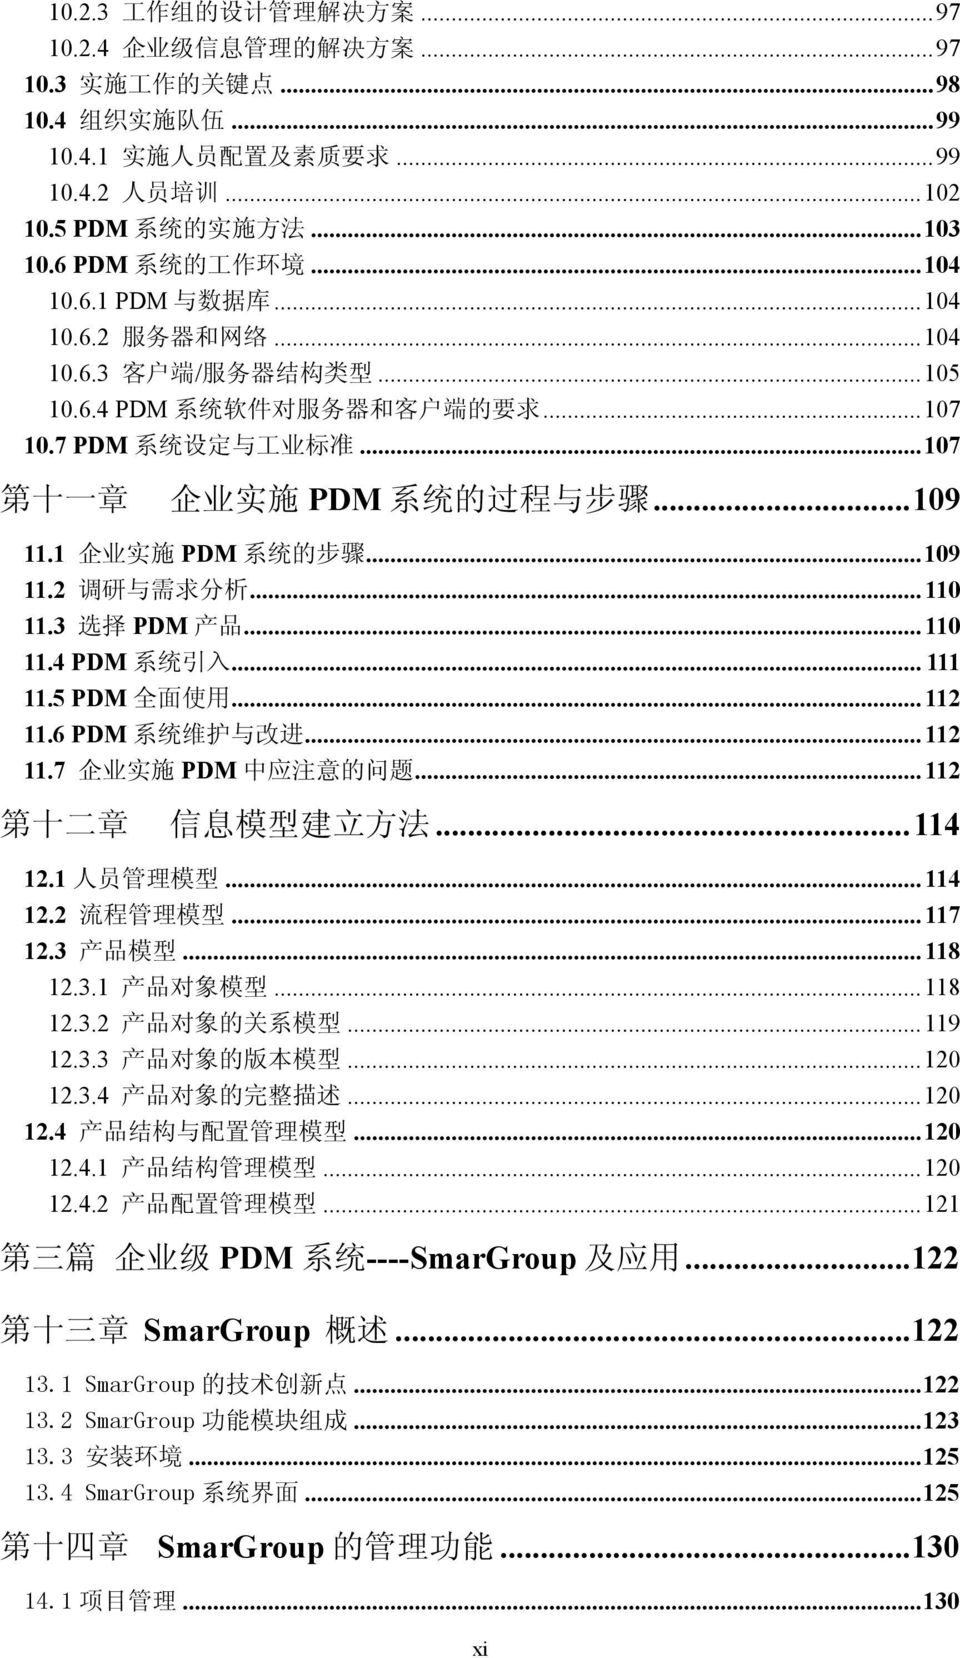 ..107 第 十 一 章 企 业 实 施 PDM 系 统 的 过 程 与 步 骤...109 11.1 企 业 实 施 PDM 系 统 的 步 骤...109 11.2 调 研 与 需 求 分 析... 110 11.3 选 择 PDM 产 品... 110 11.4 PDM 系 统 引 入... 111 11.5 PDM 全 面 使 用... 112 11.